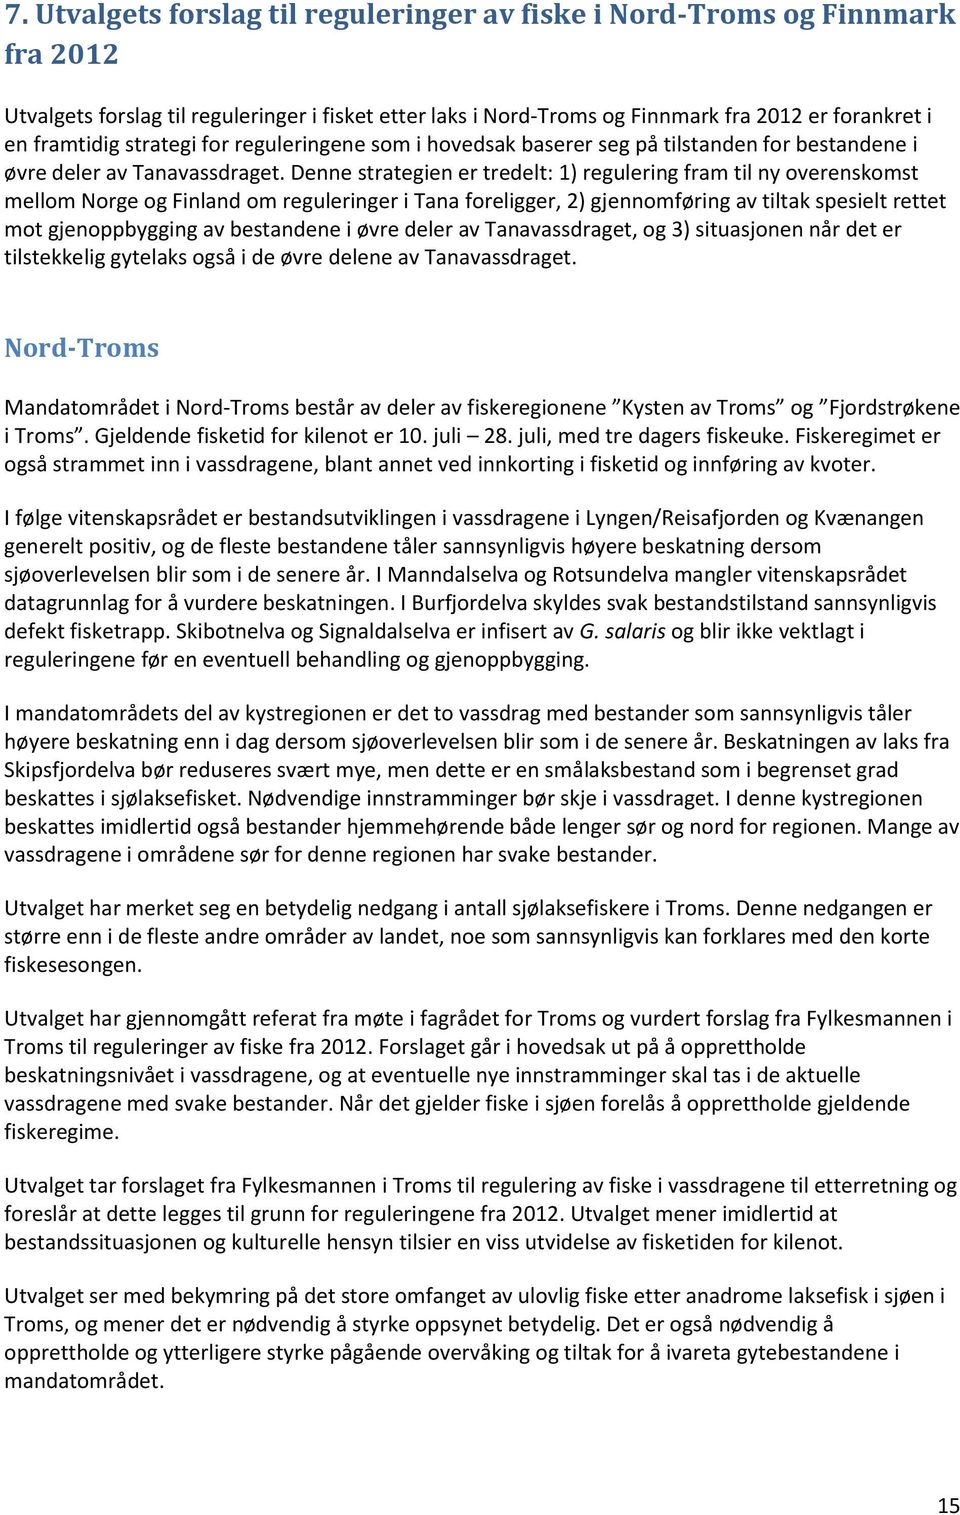 Denne strategien er tredelt: 1) regulering fram til ny overenskomst mellom Norge og Finland om reguleringer i Tana foreligger, 2) gjennomføring av tiltak spesielt rettet mot gjenoppbygging av